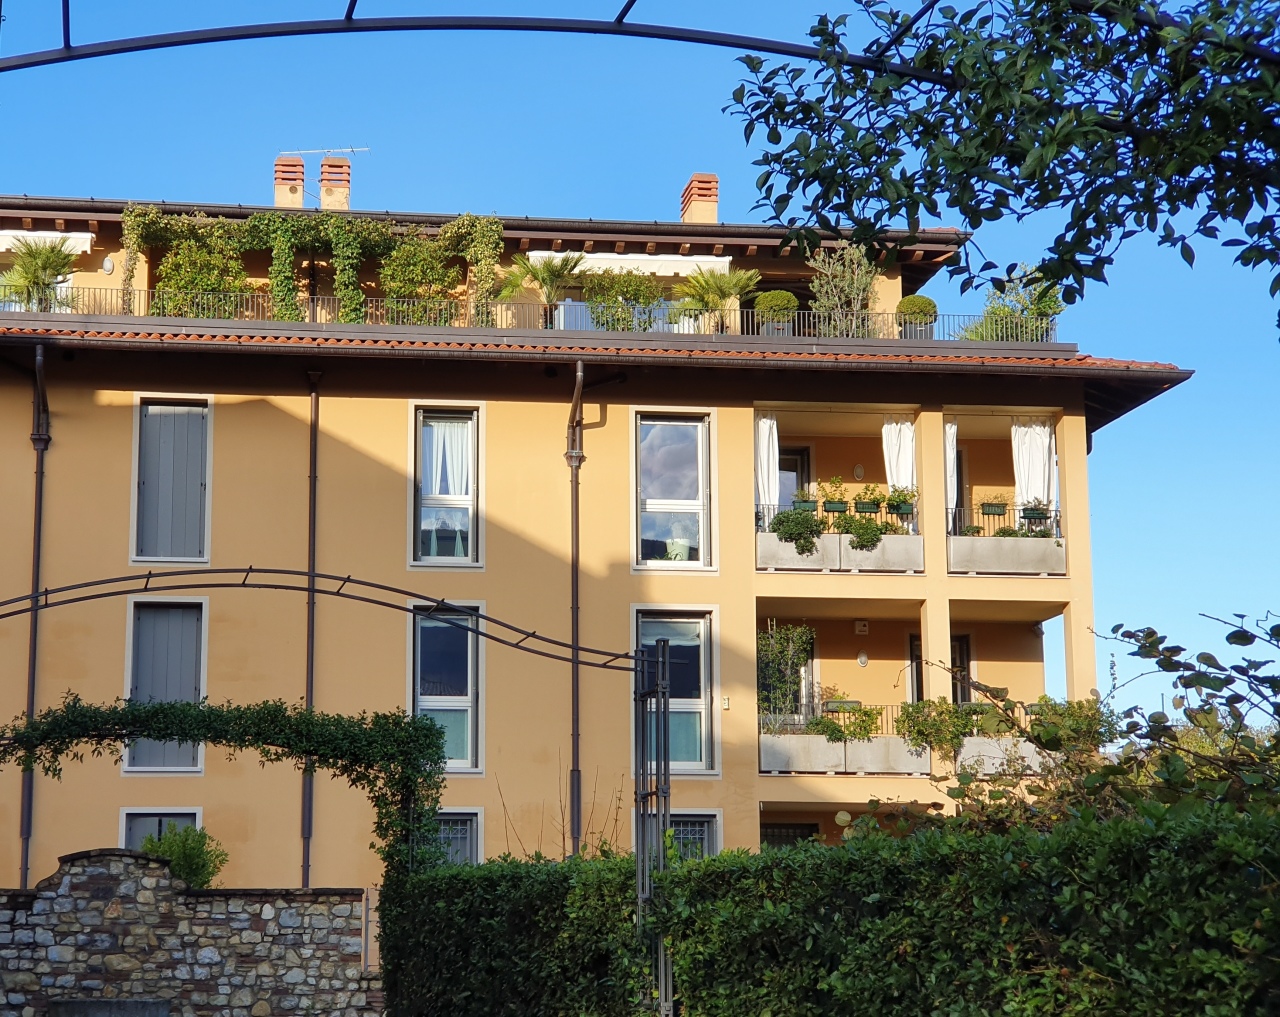 Appartamento in vendita a Brescia, 4 locali, prezzo € 500.000 | CambioCasa.it